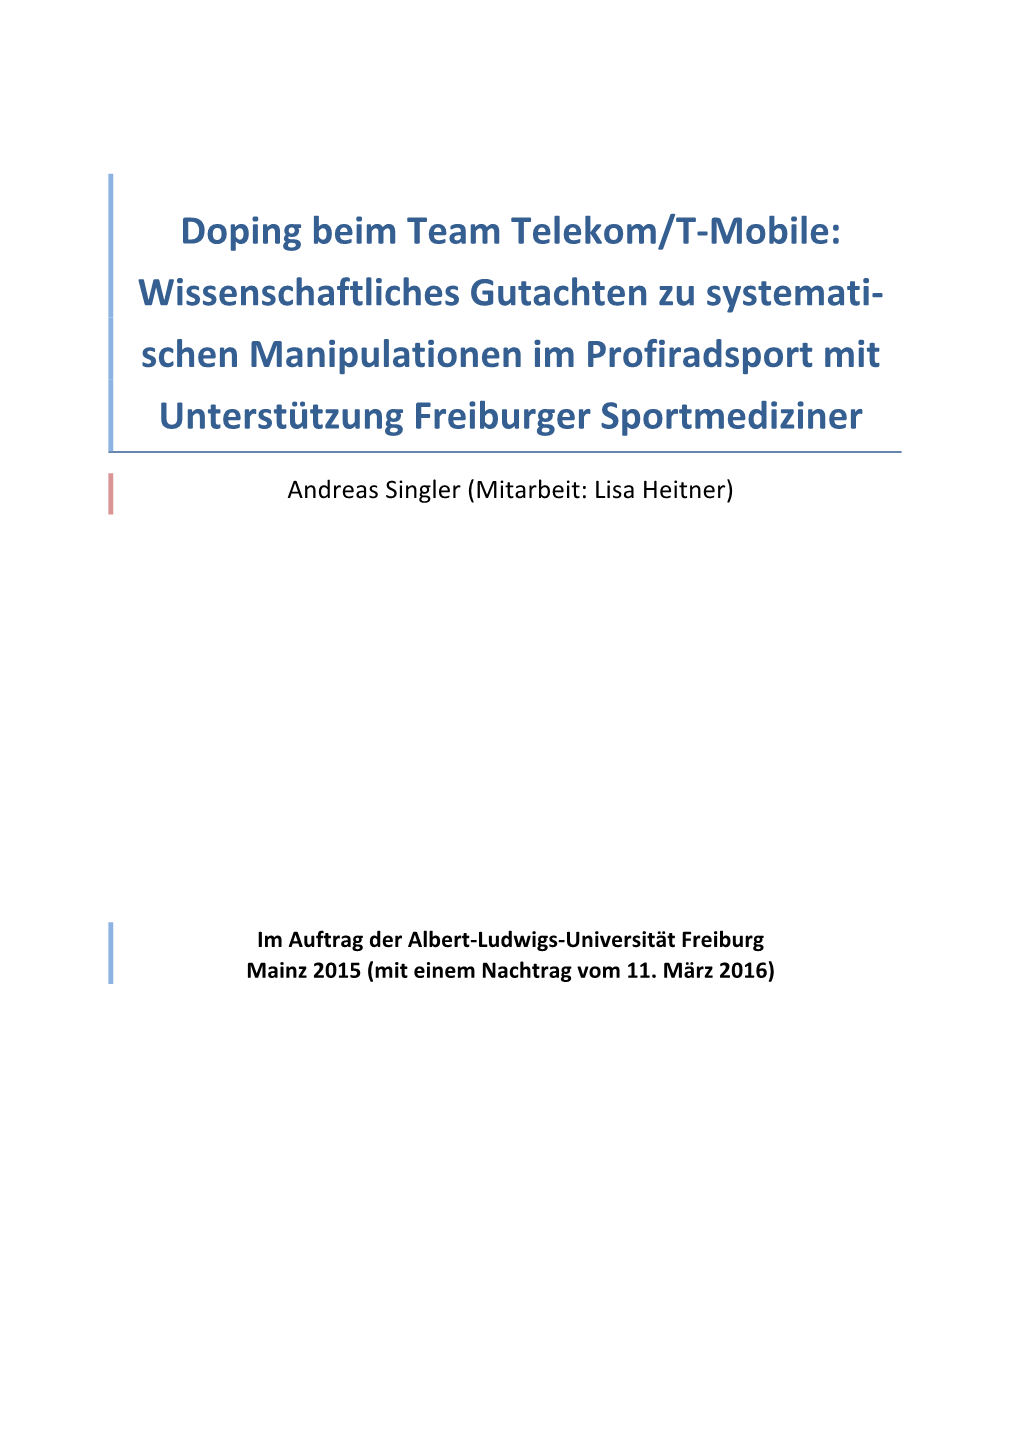 Doping Beim Team Telekom/T-Mobile: Wissenschaftliches Gutachten Zu Systemati- Schen Manipulationen Im Profiradsport Mit Unterstützung Freiburger Sportmediziner